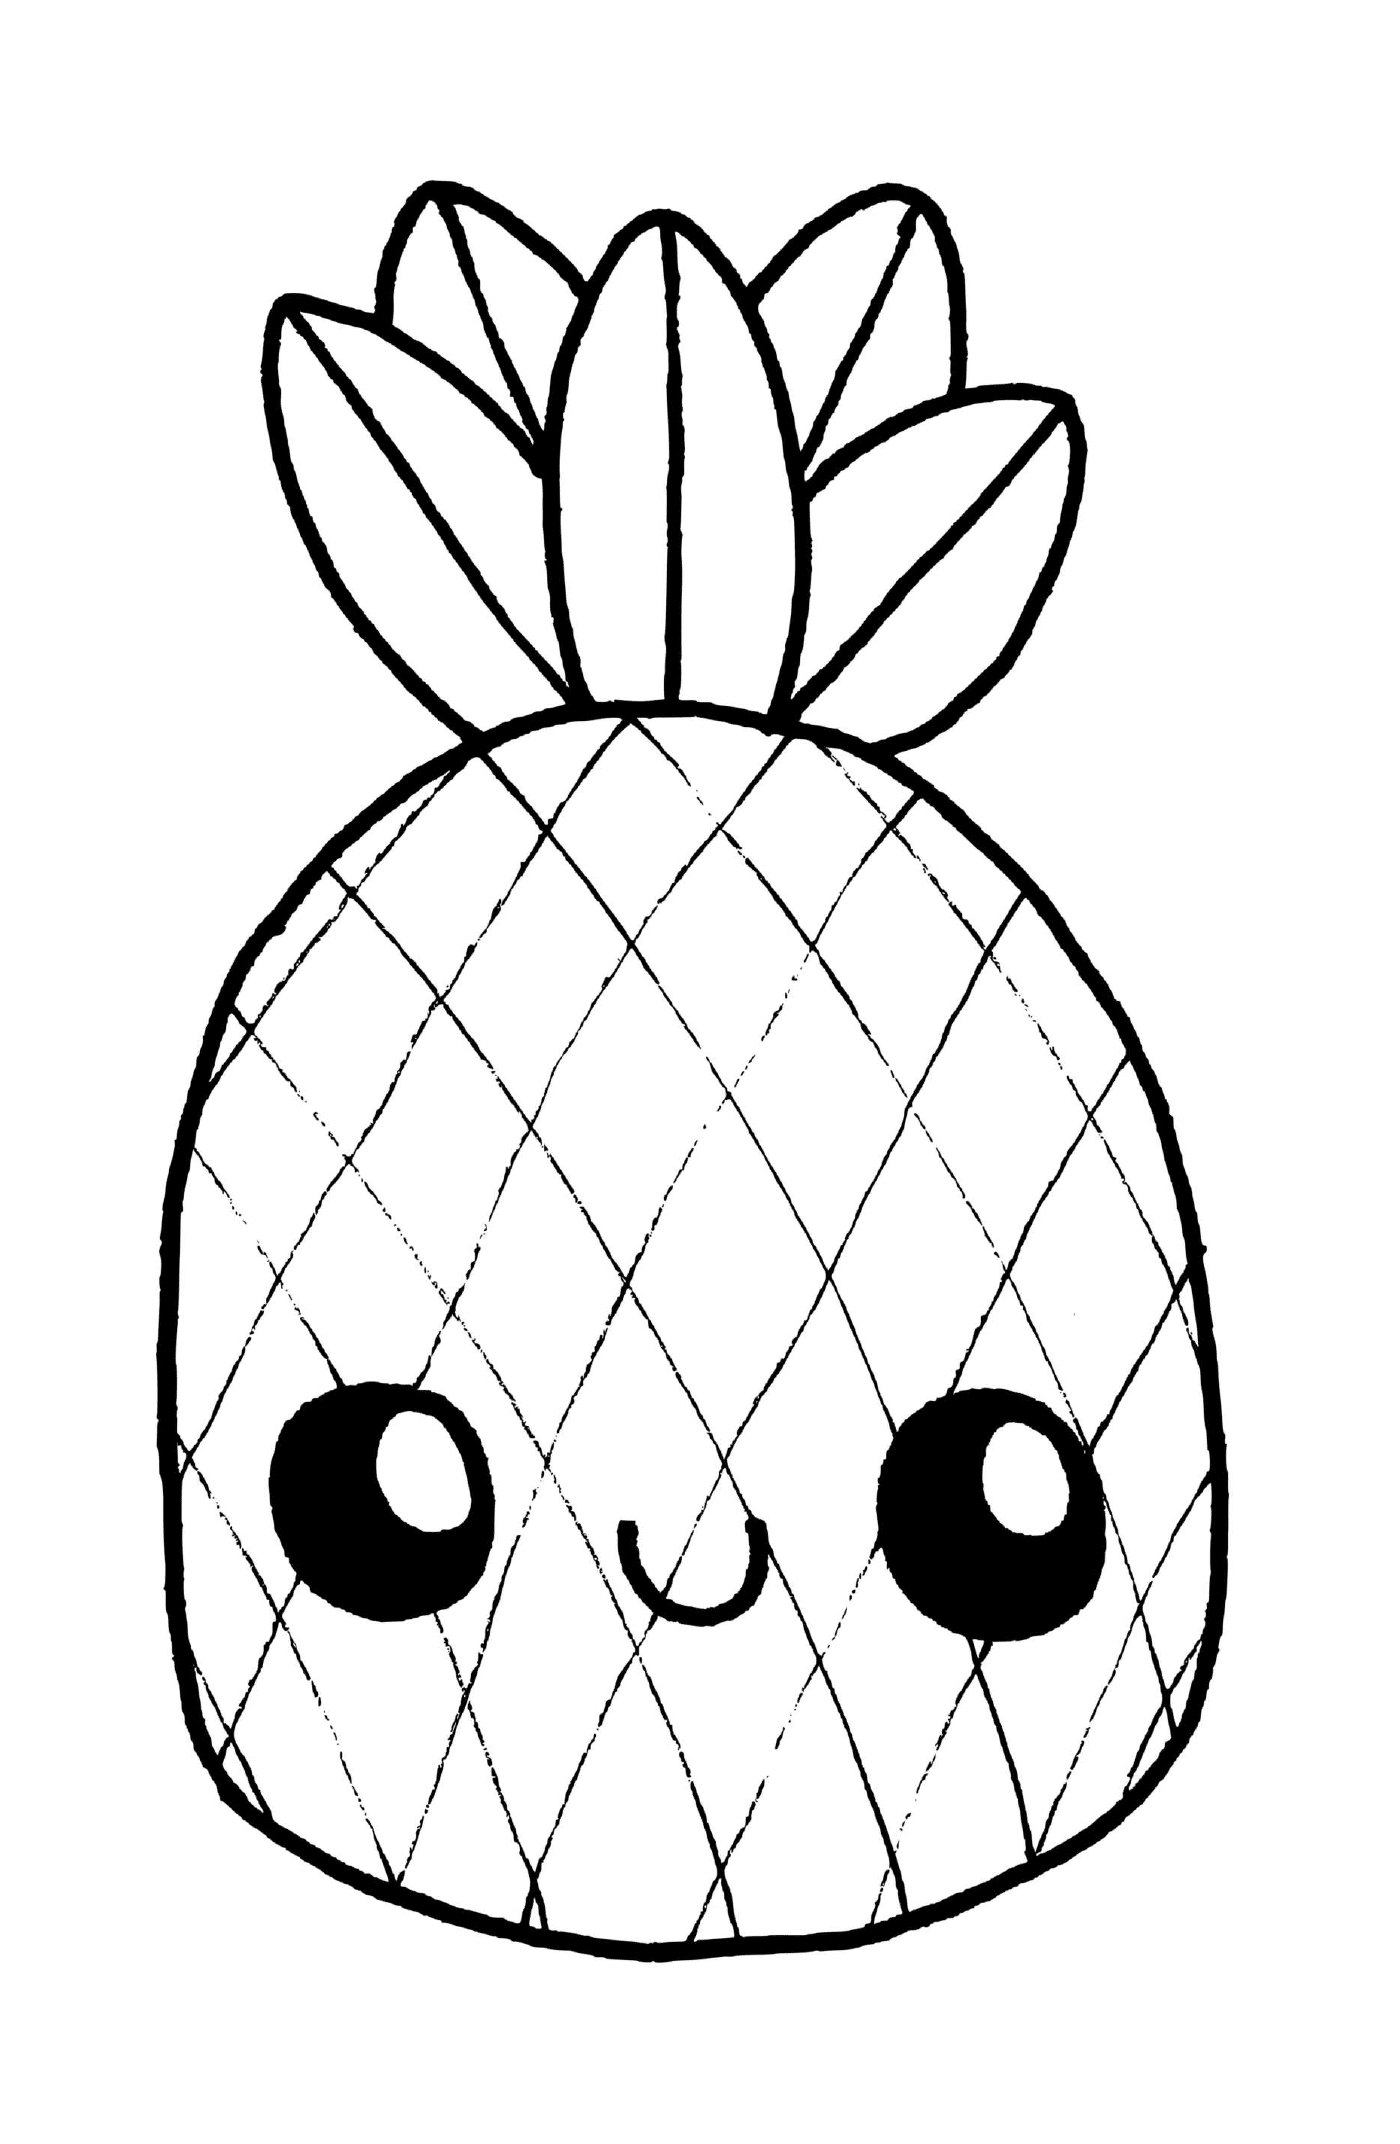  可爱可爱可爱的菠萝,为儿童教育数学游戏提供数字 